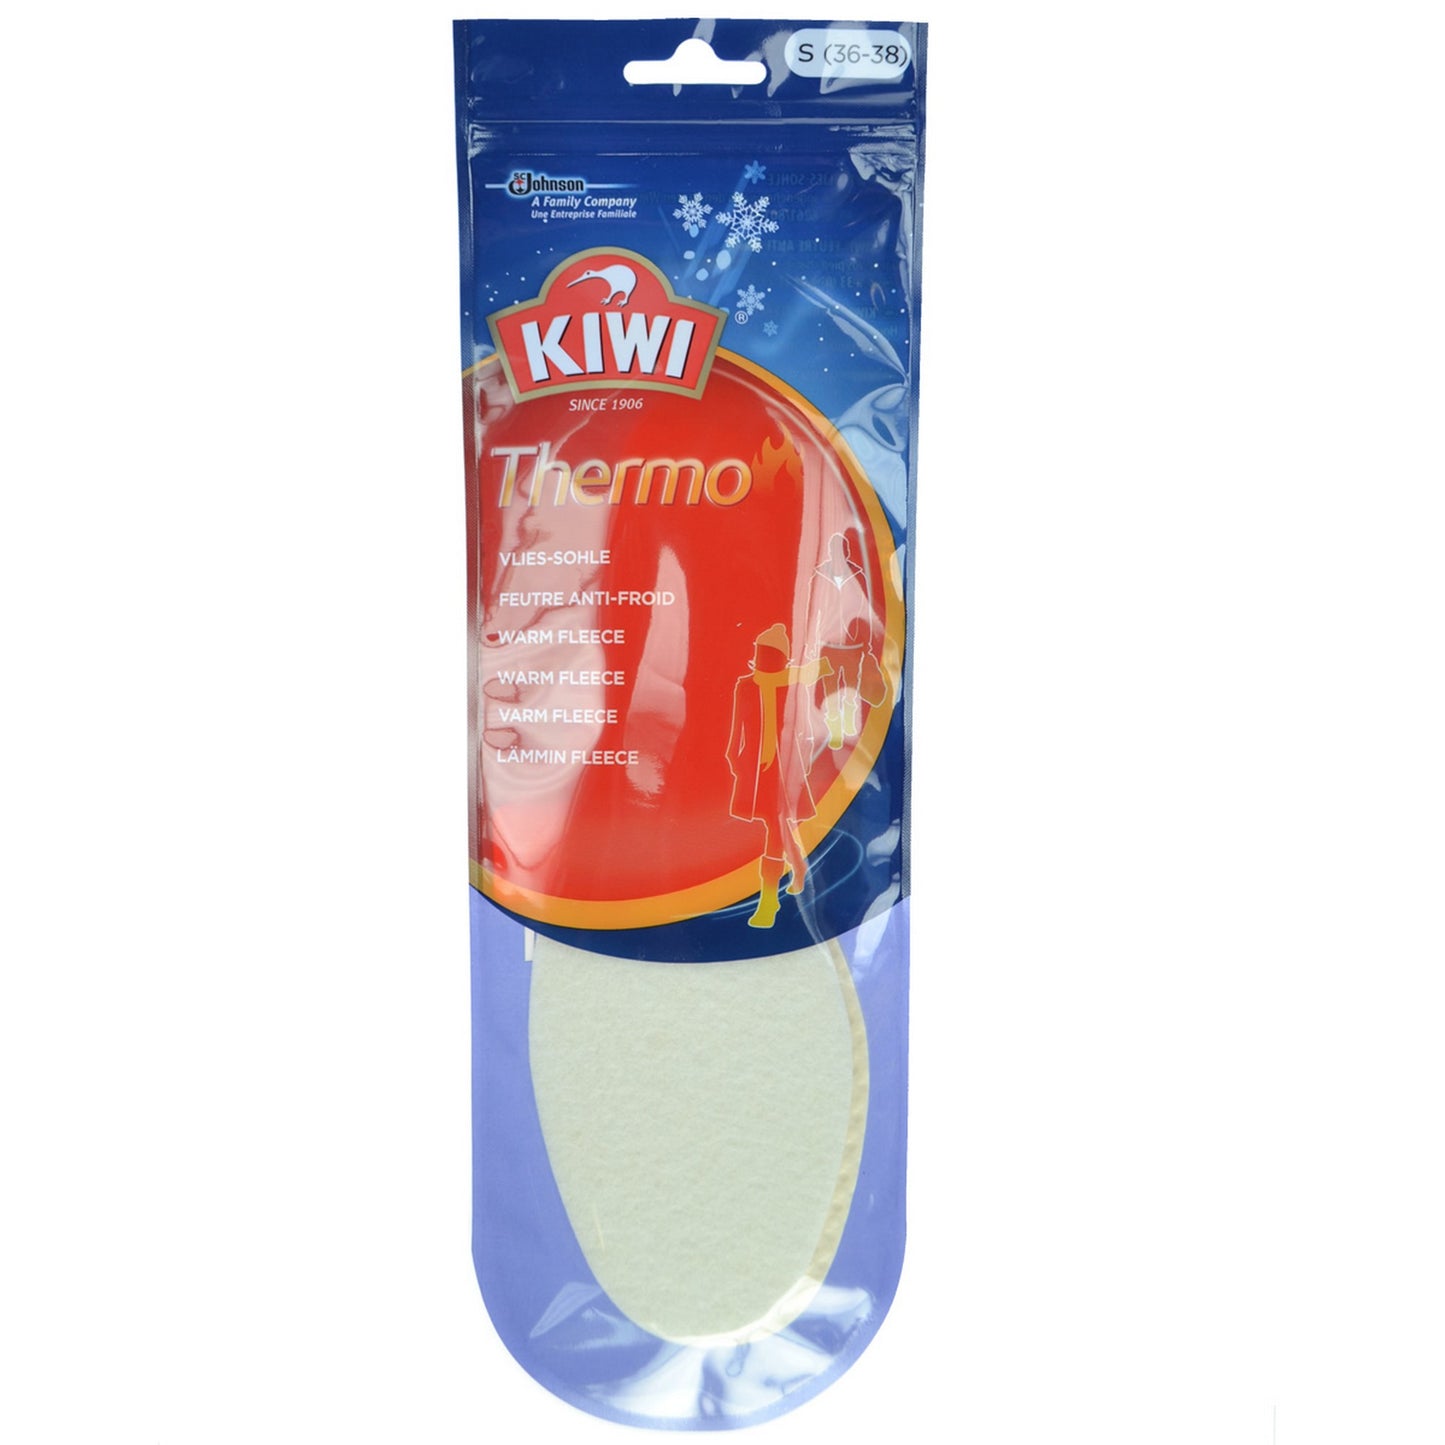 Kiwi Thermo Warm Fleece Insole